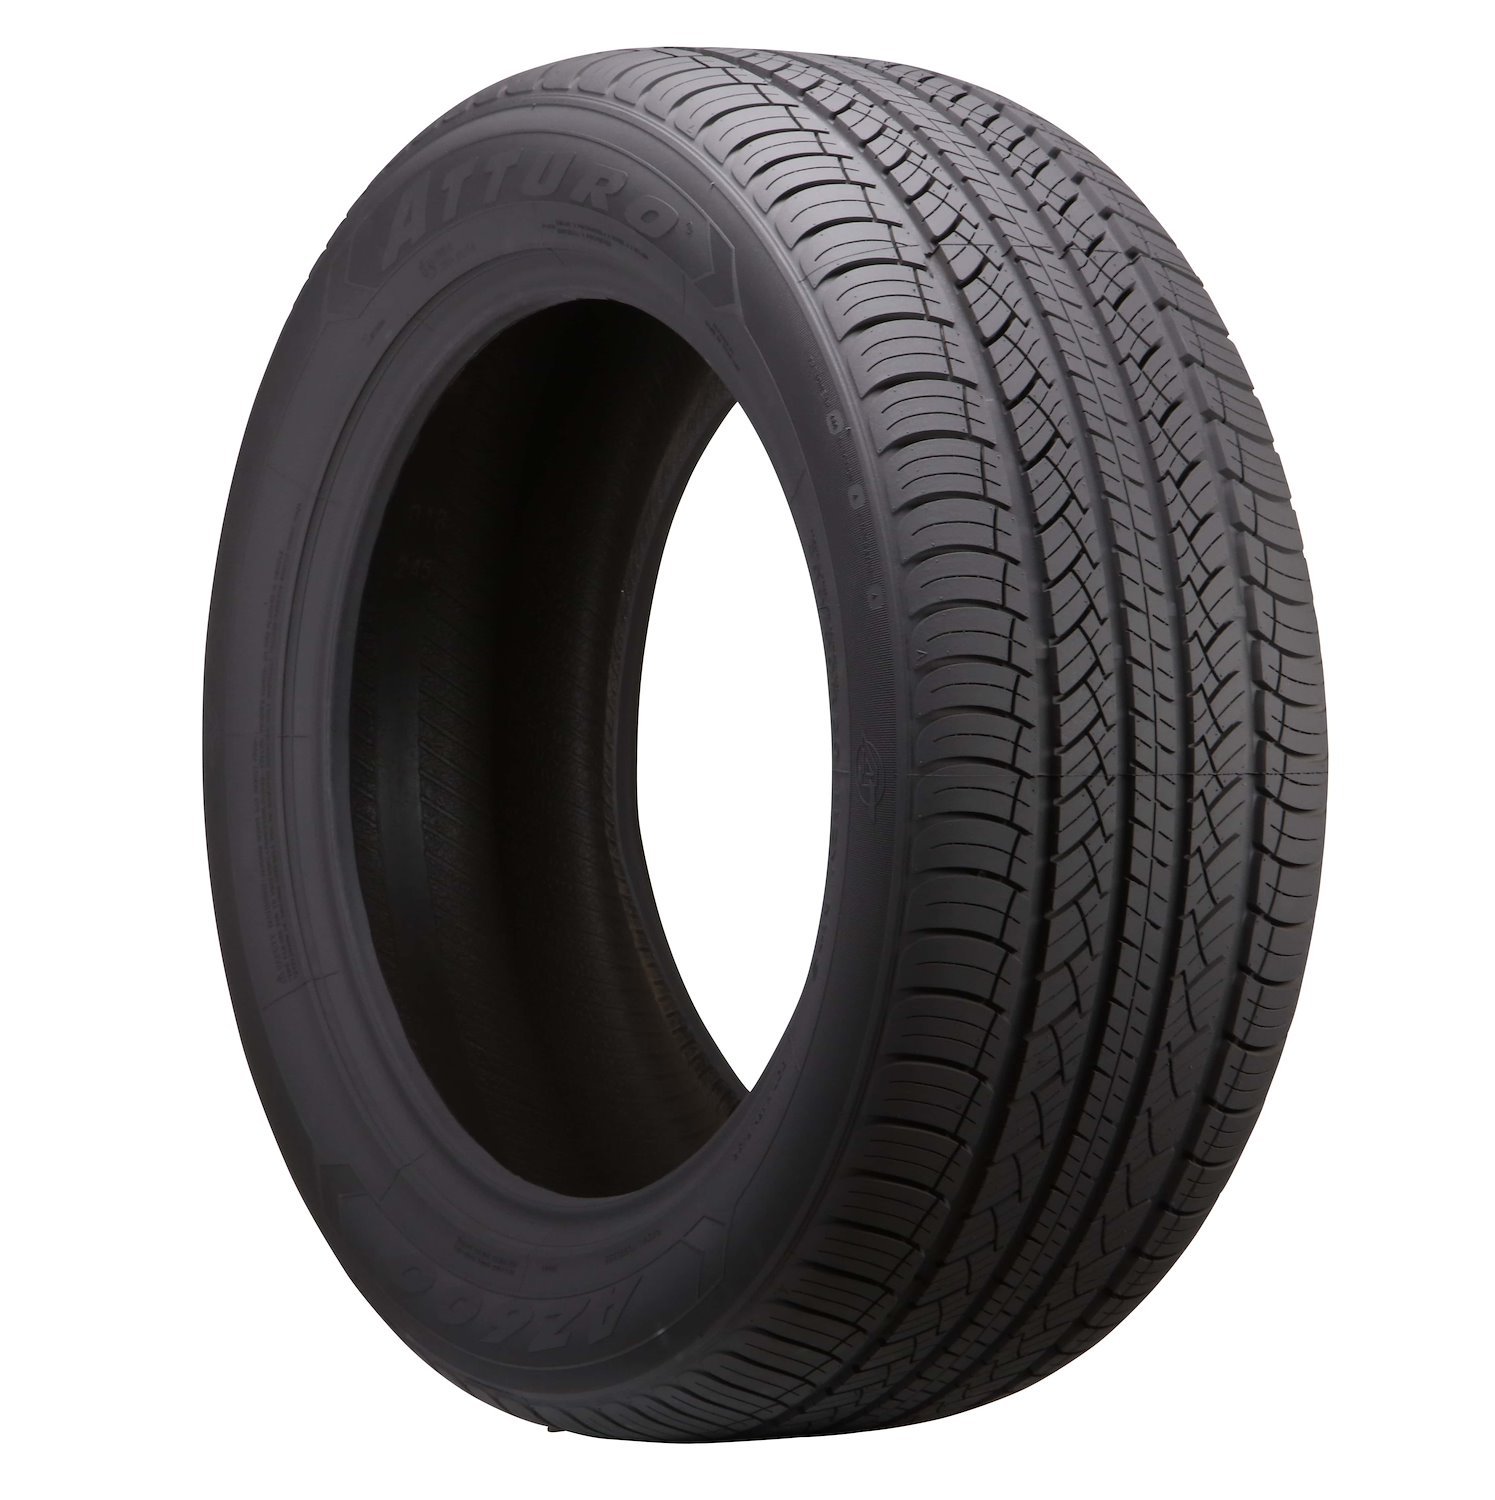 AZ600-I0117310 AZ 600 Tire, 245/60R18